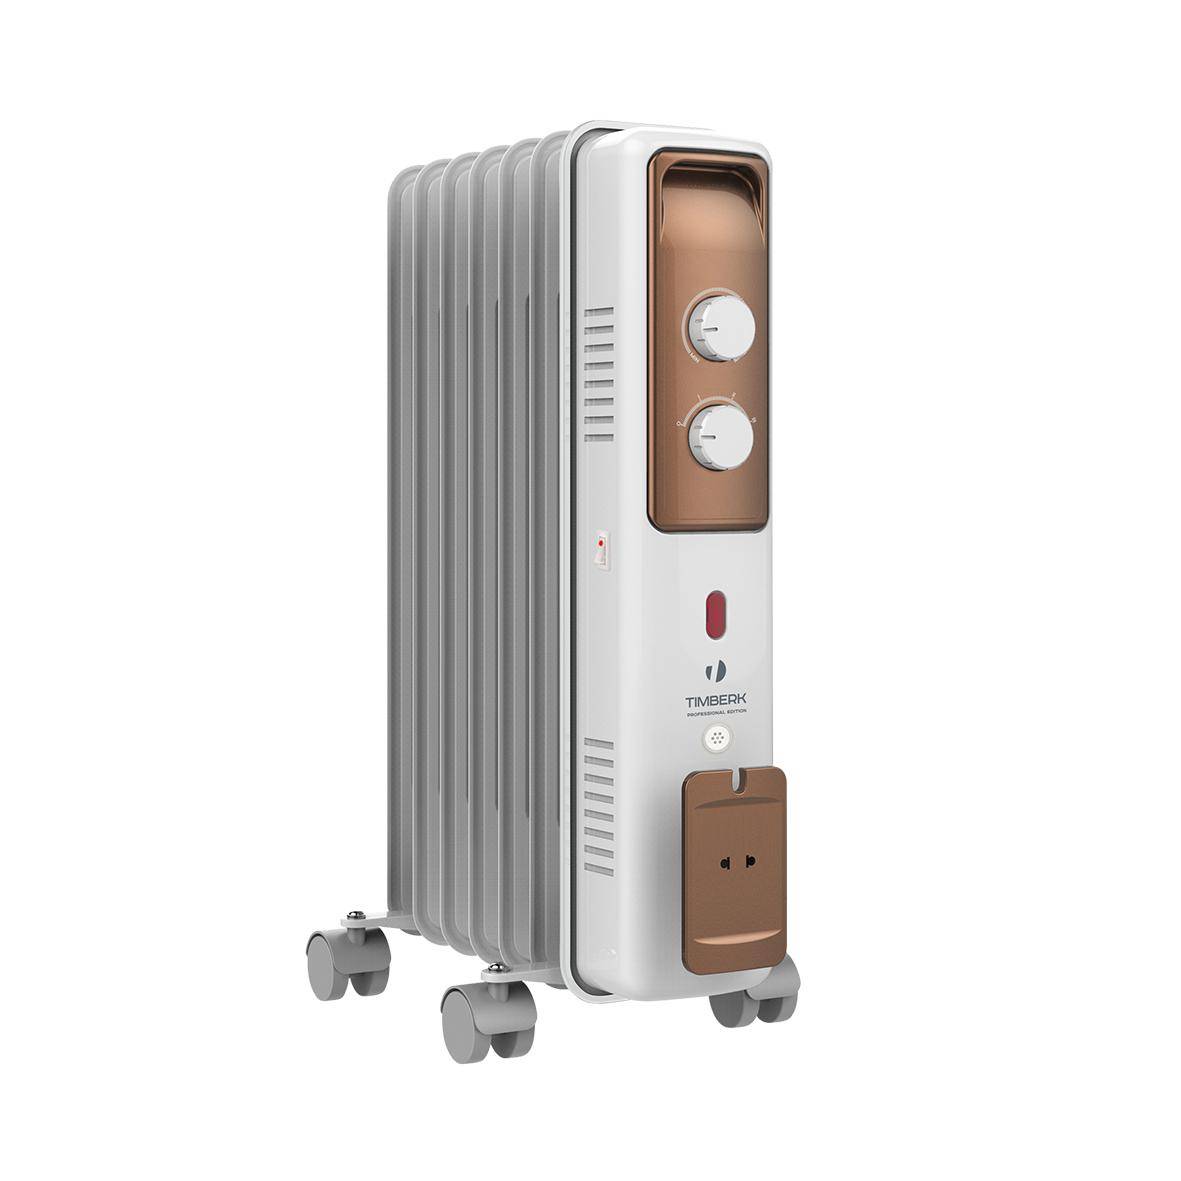 Конвектор или масляный нагреватель: Что лучше конвектор или масляный обогреватель: сравниваем параметры